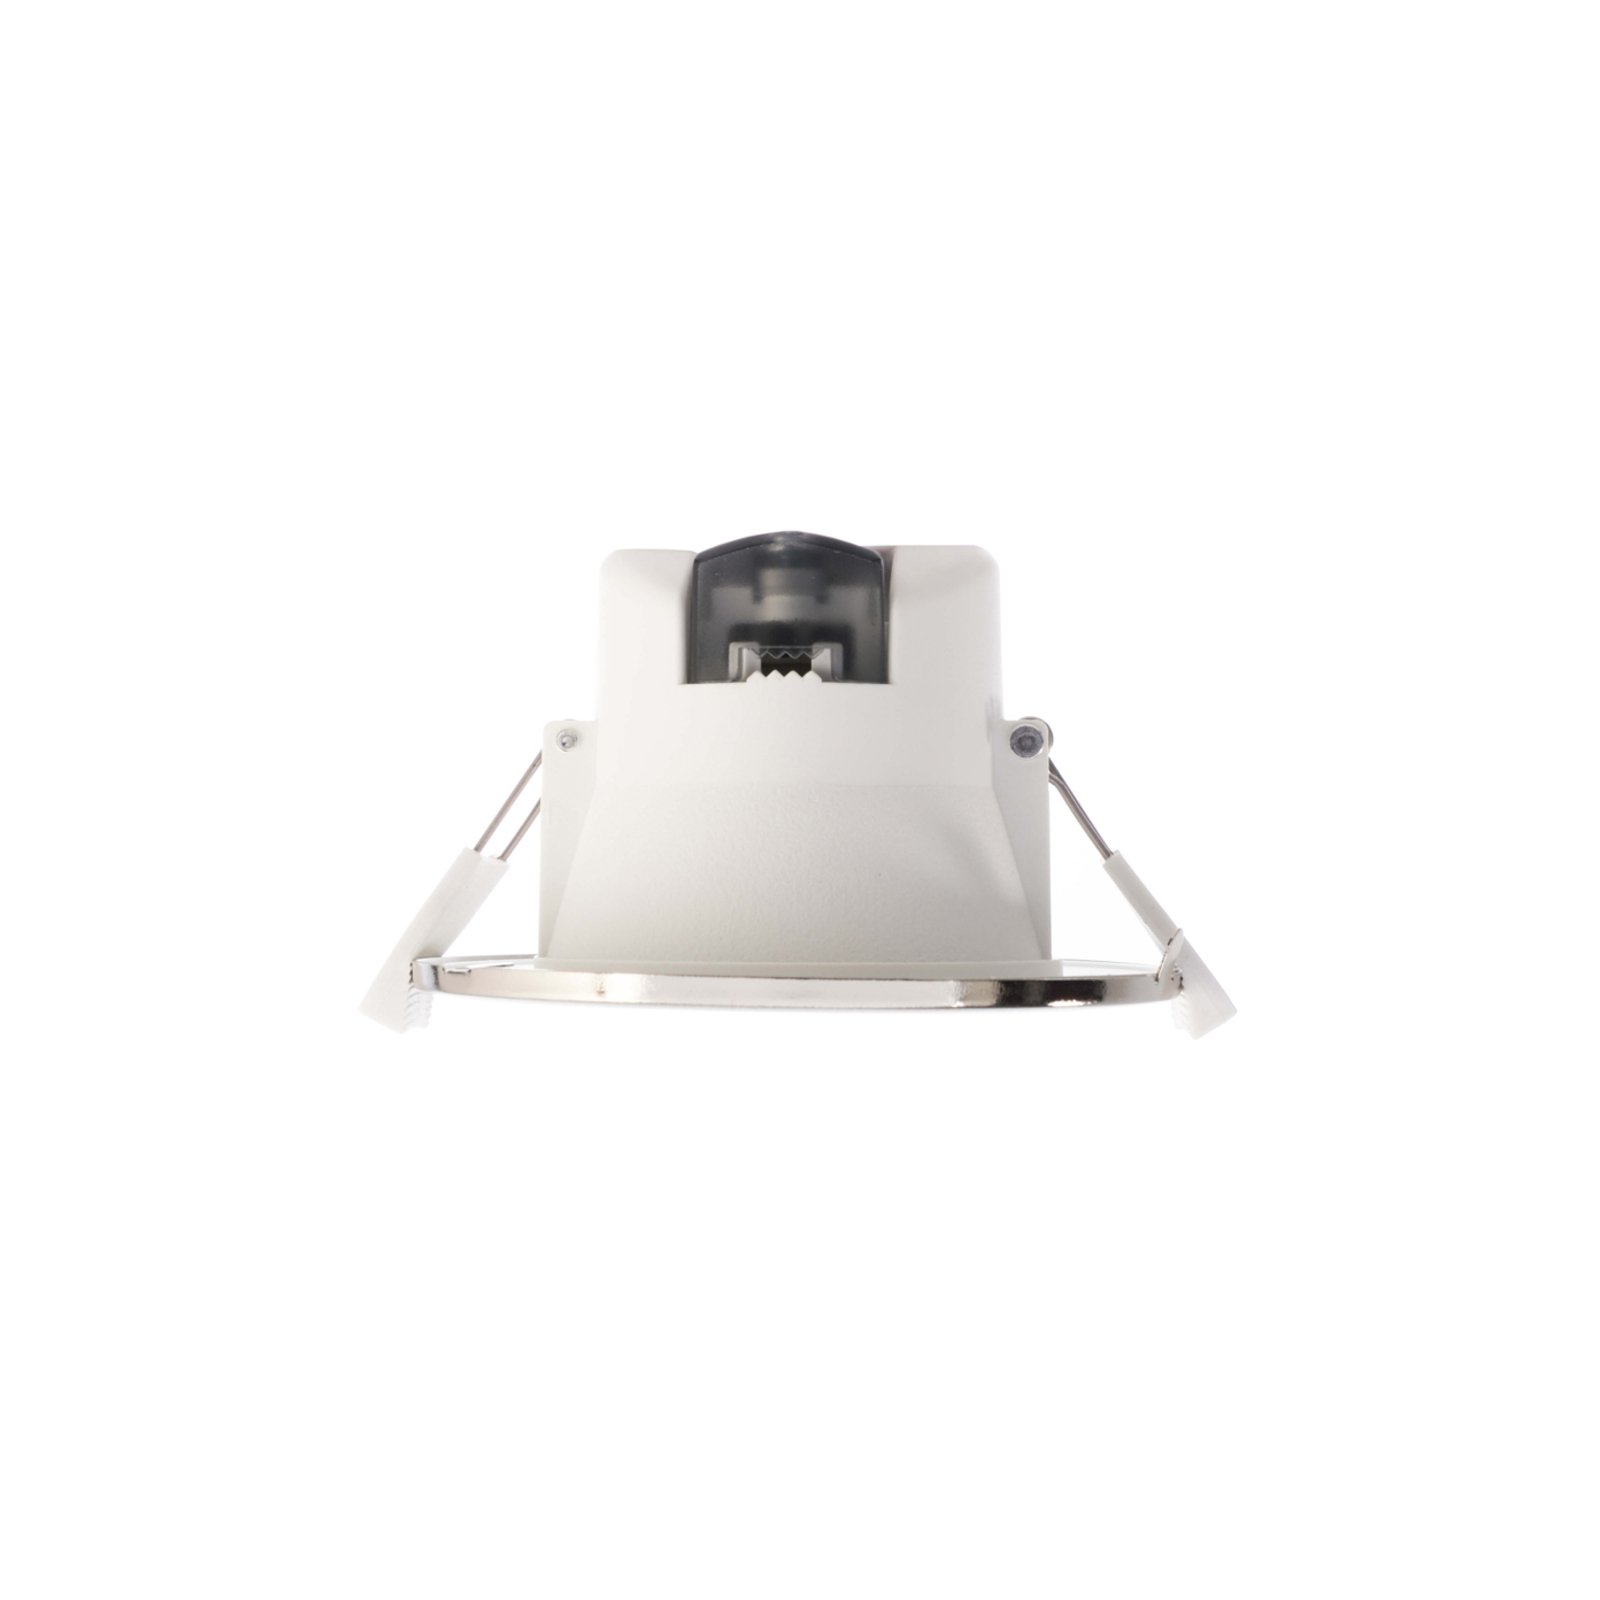 LED-Einbauleuchte Acrux 68, weiß, Ø 9,5 cm